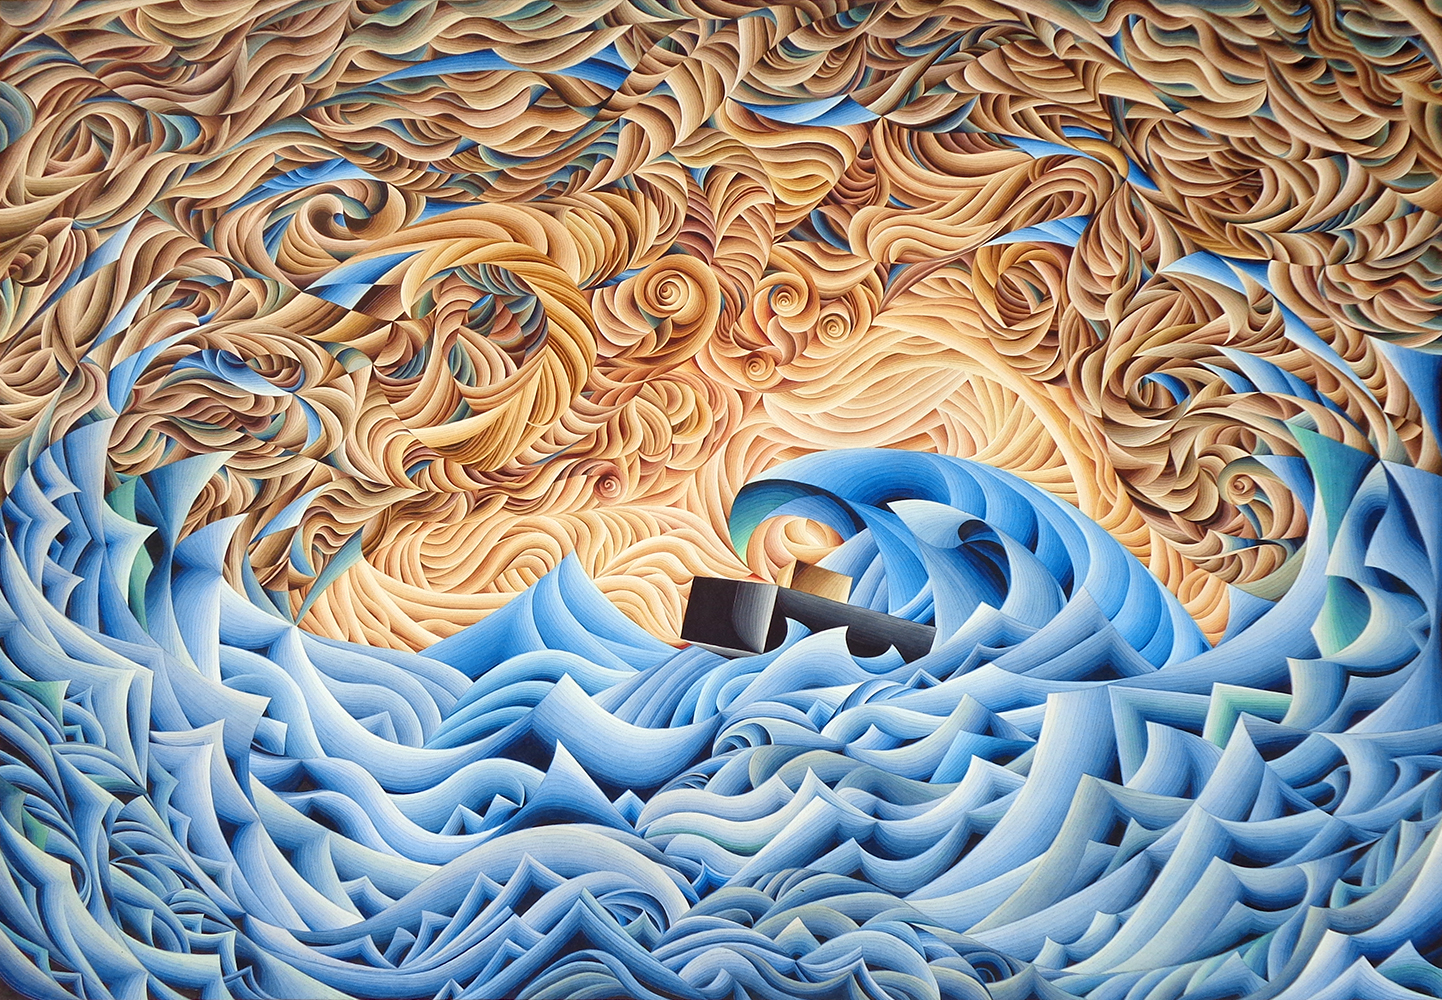 Damir Facan Grdiša - Brod mali - akvarel na papiru, 140x200cm, 2019.